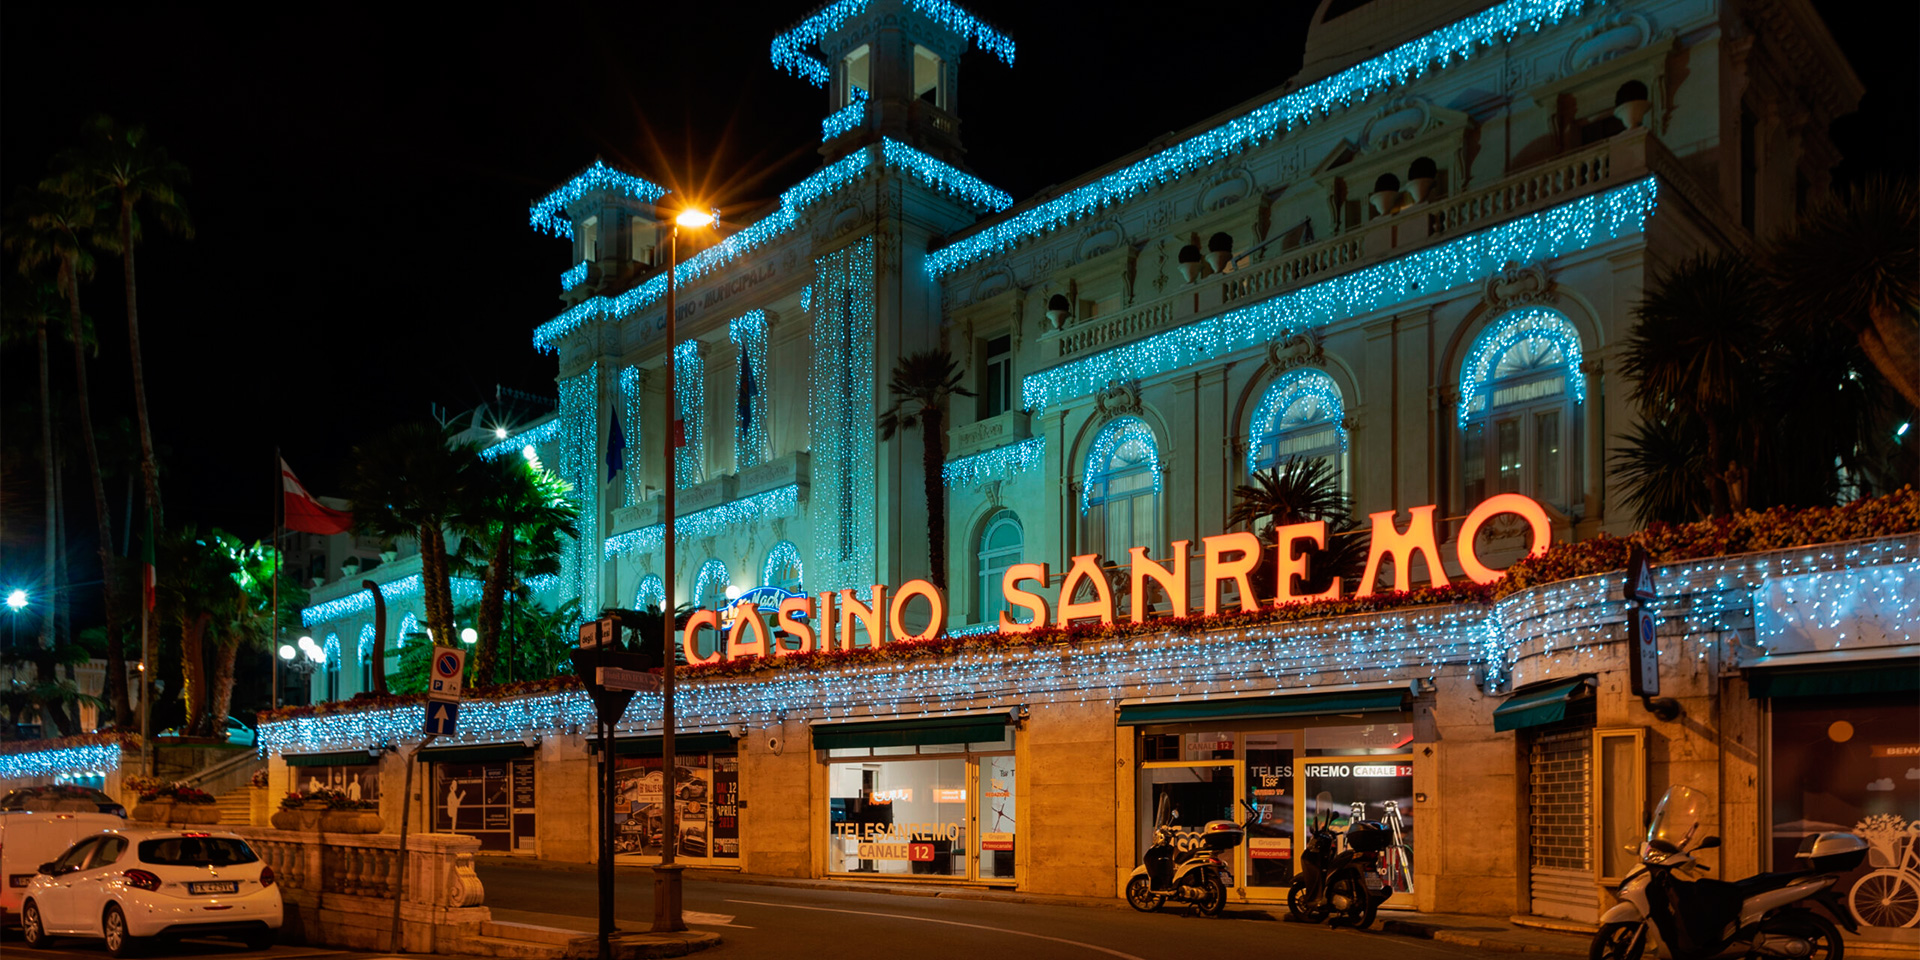 Sanremo casino building